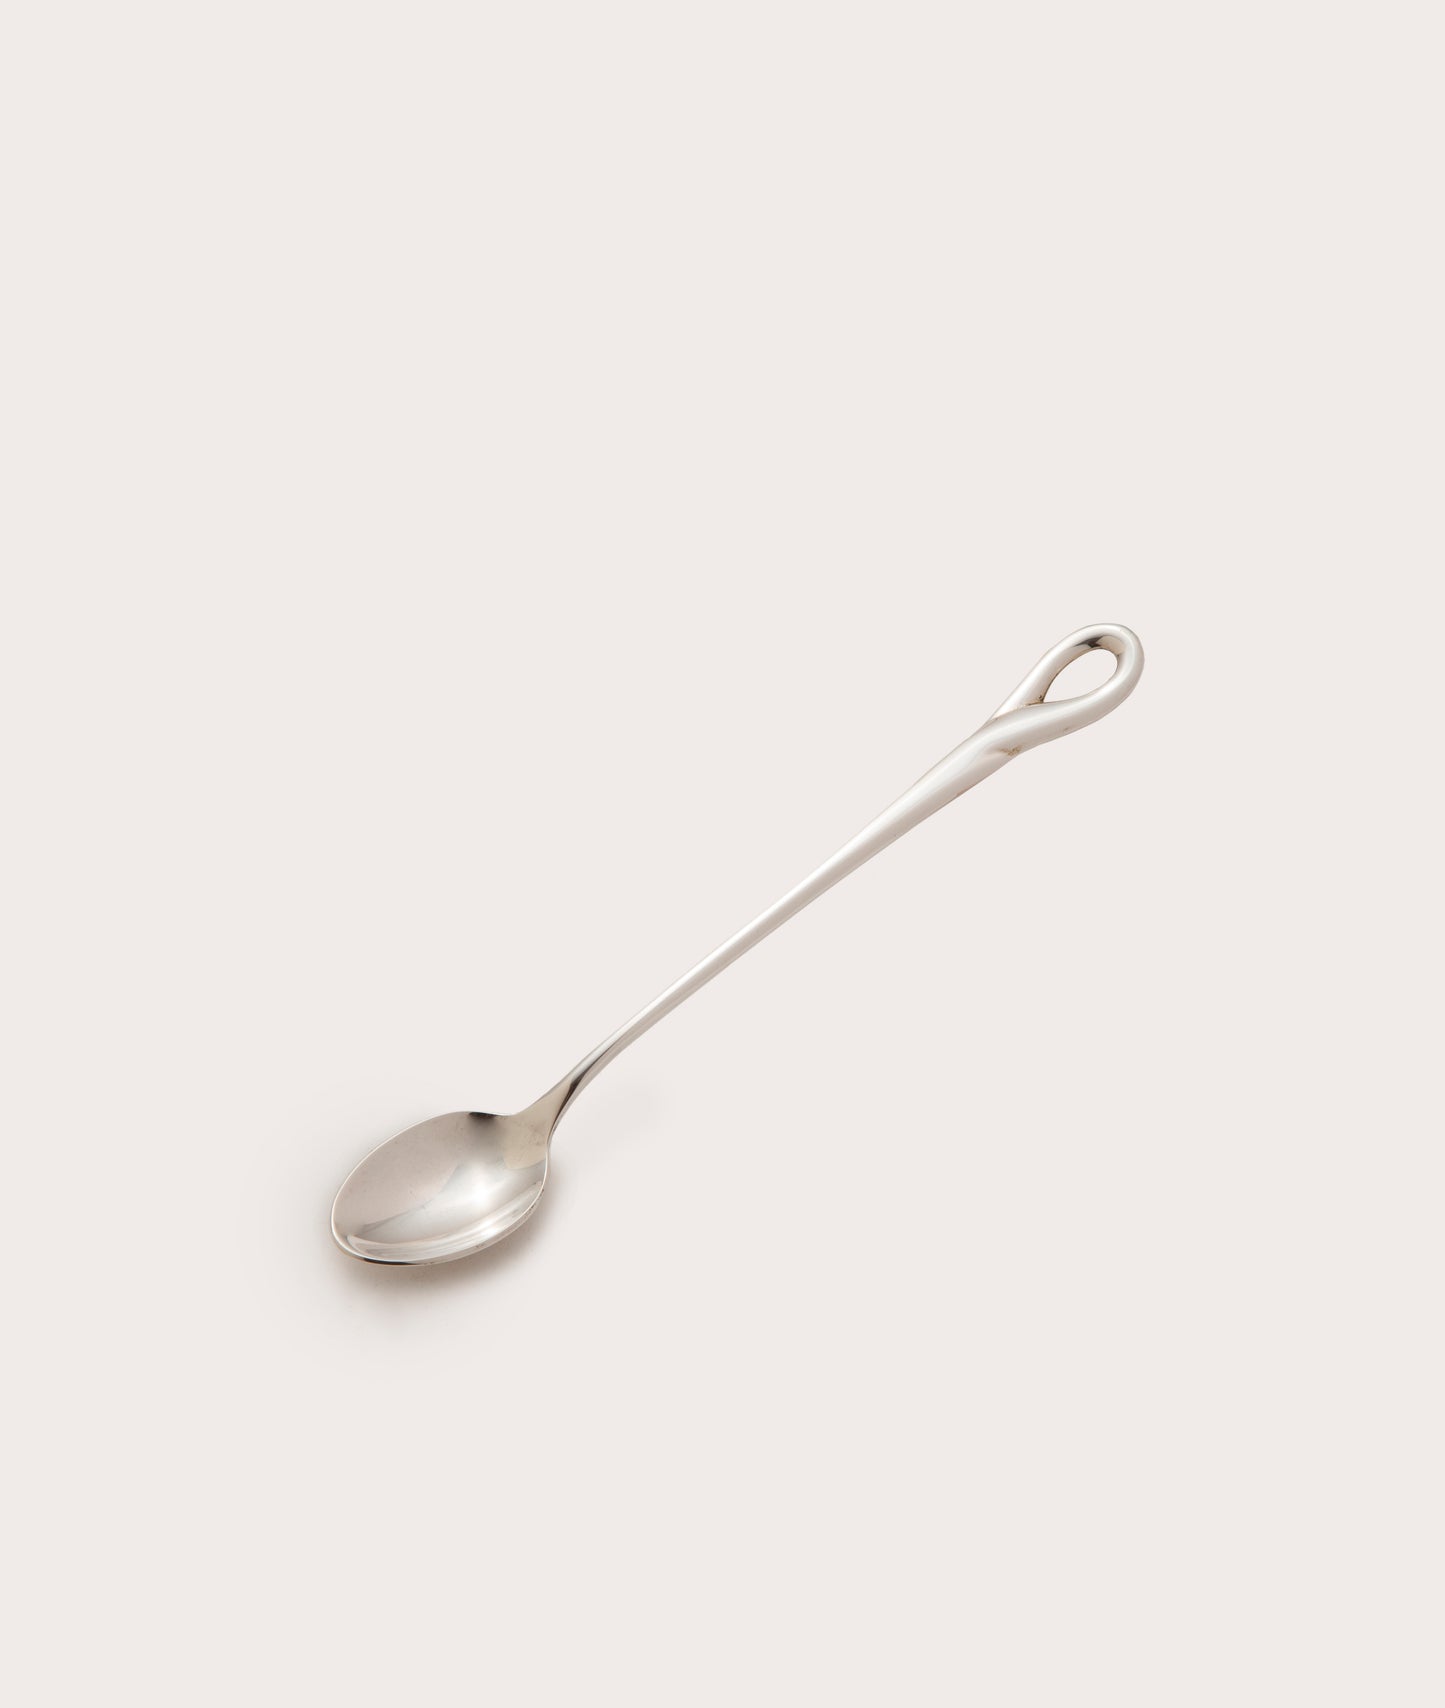 Baby Spoon III